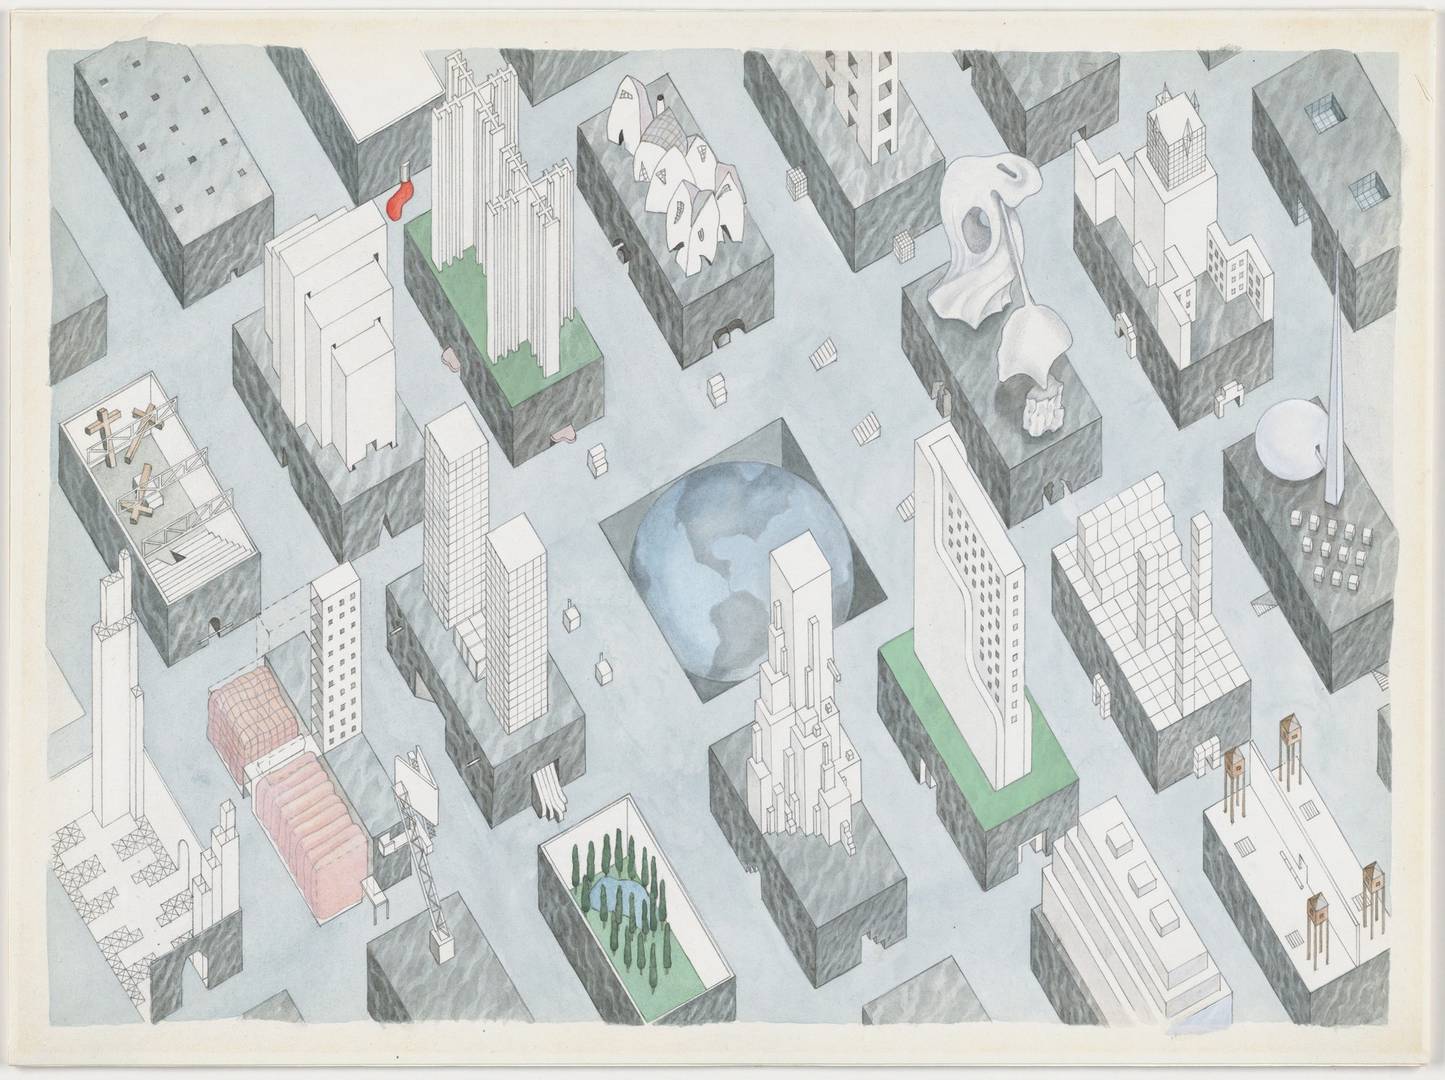 Рем Колхас, Маделон Вризендорп. Проект «Город плененного земного шара», Нью-Йорк, аксонометрия. 1972